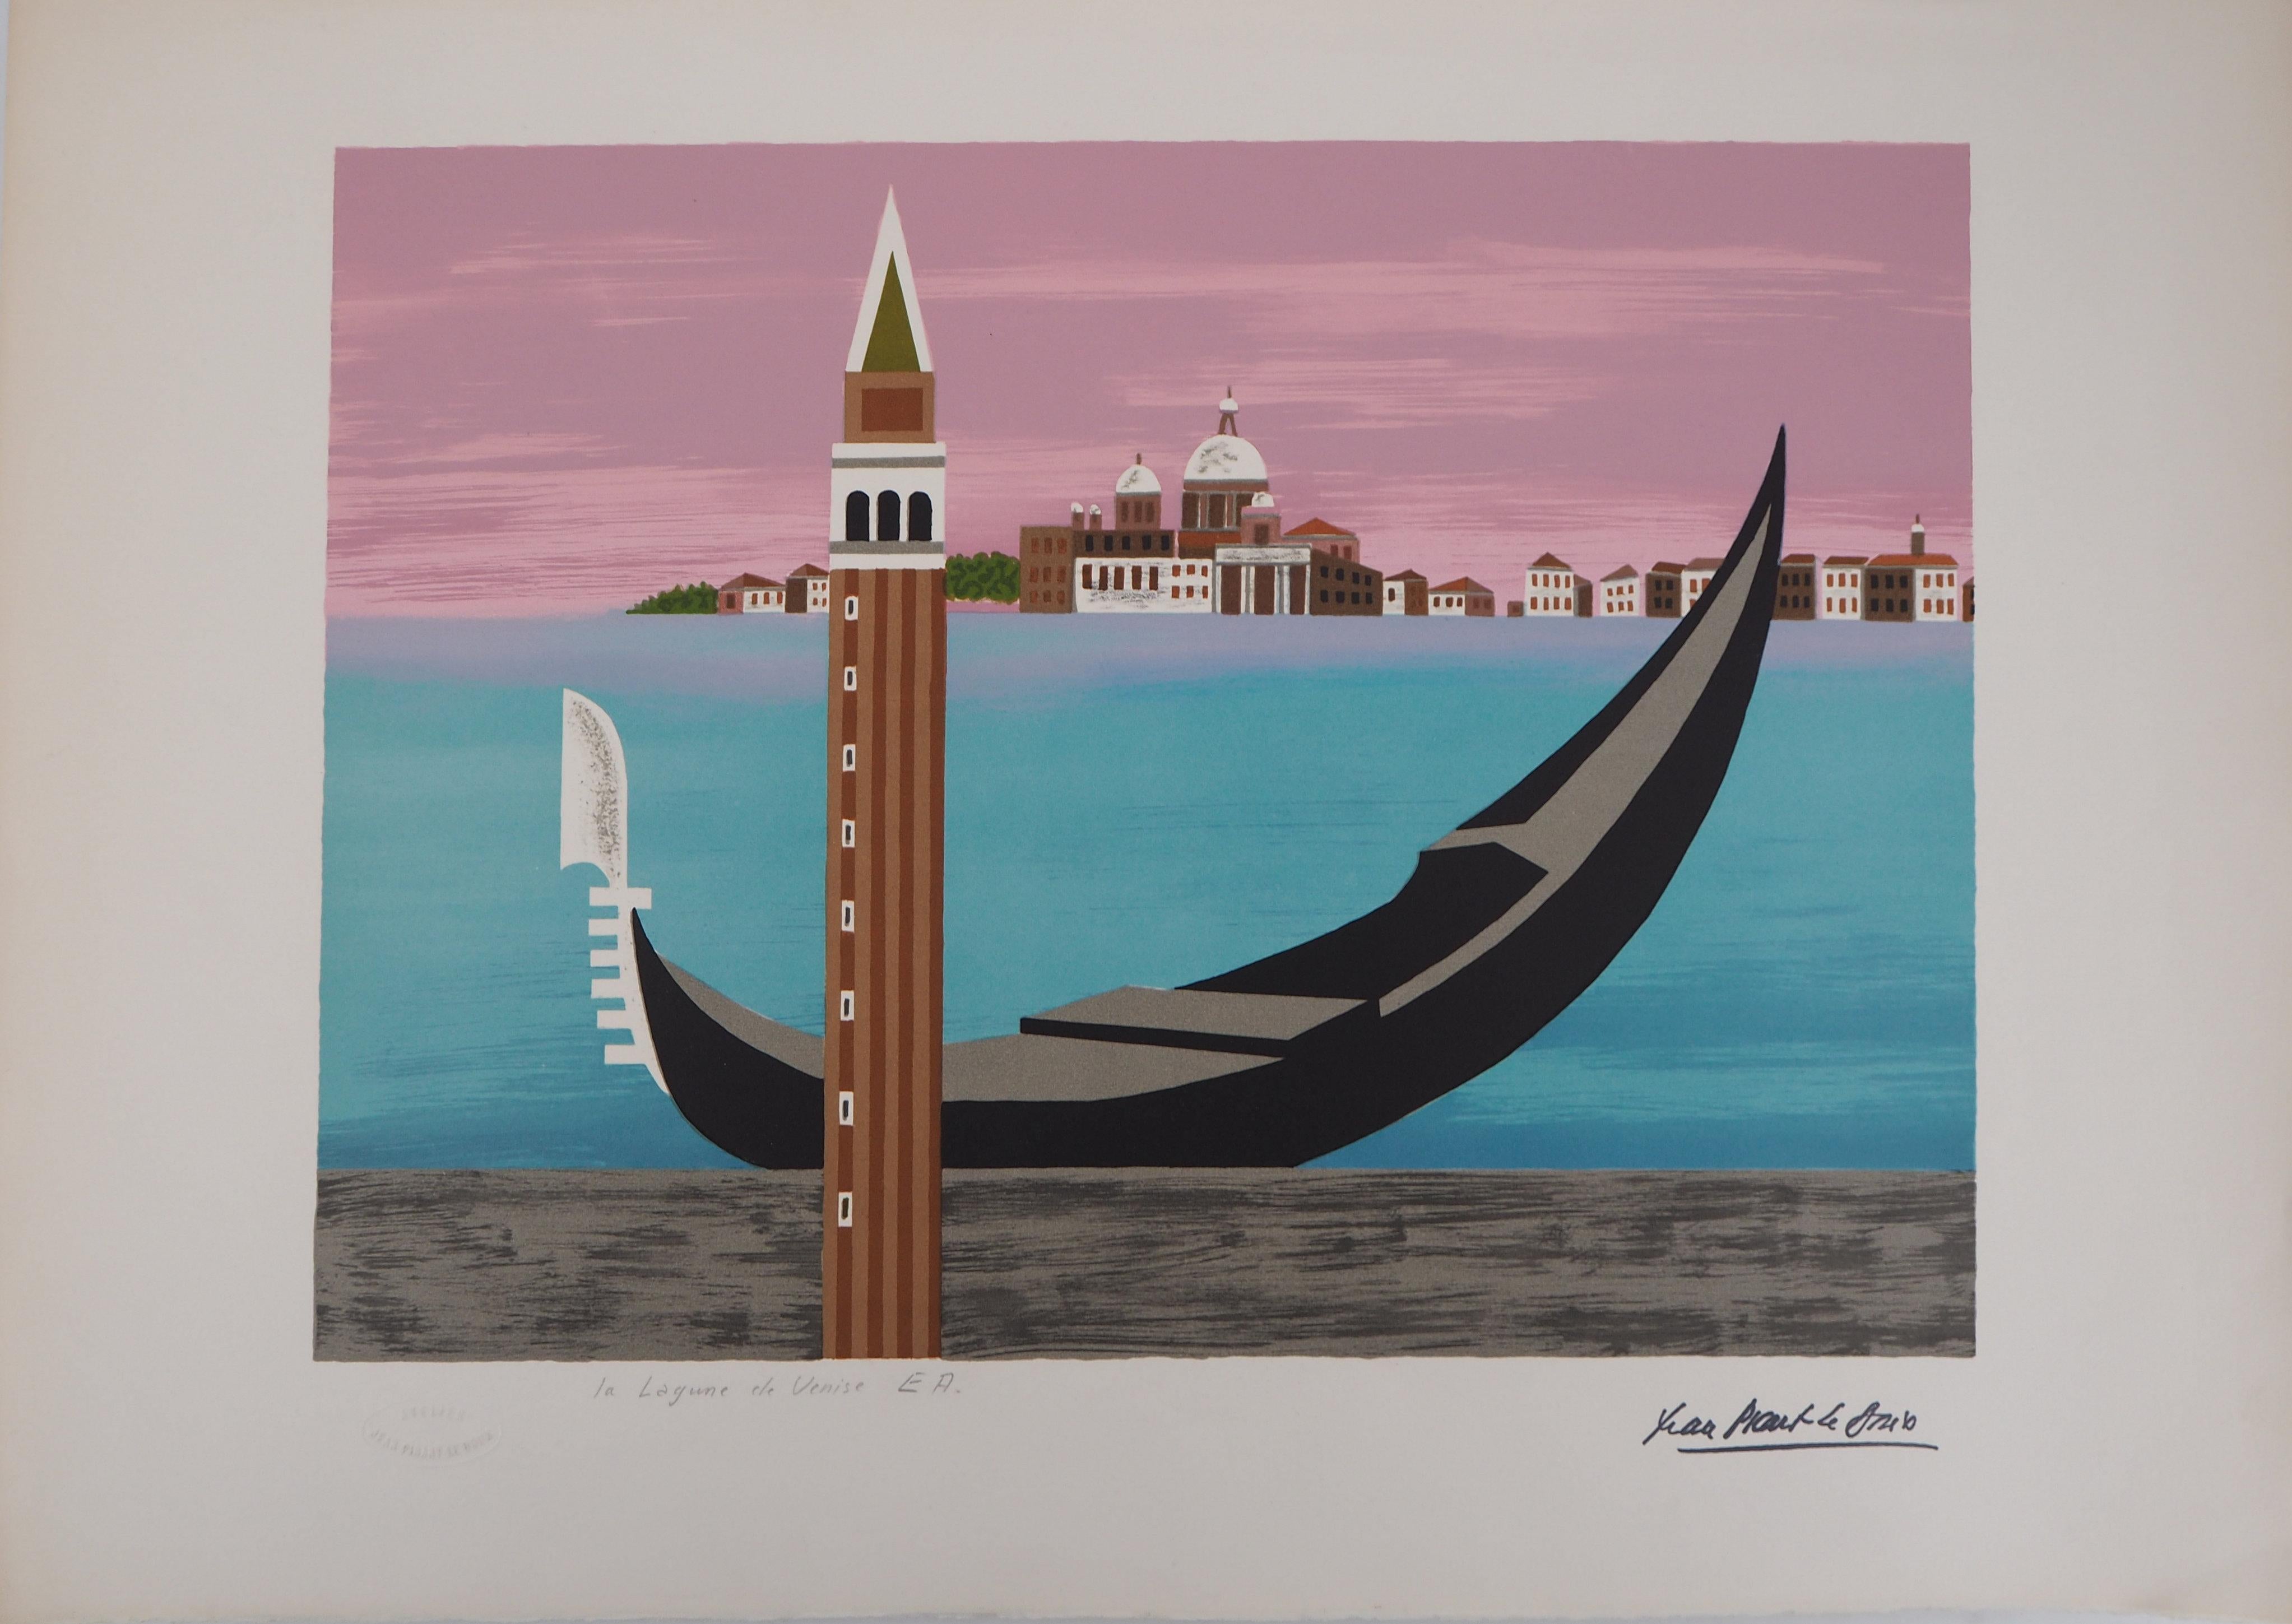 Jean Picart Le Doux Landscape Print - Lagoon of Venice - Original handsigned lithograph/ EA